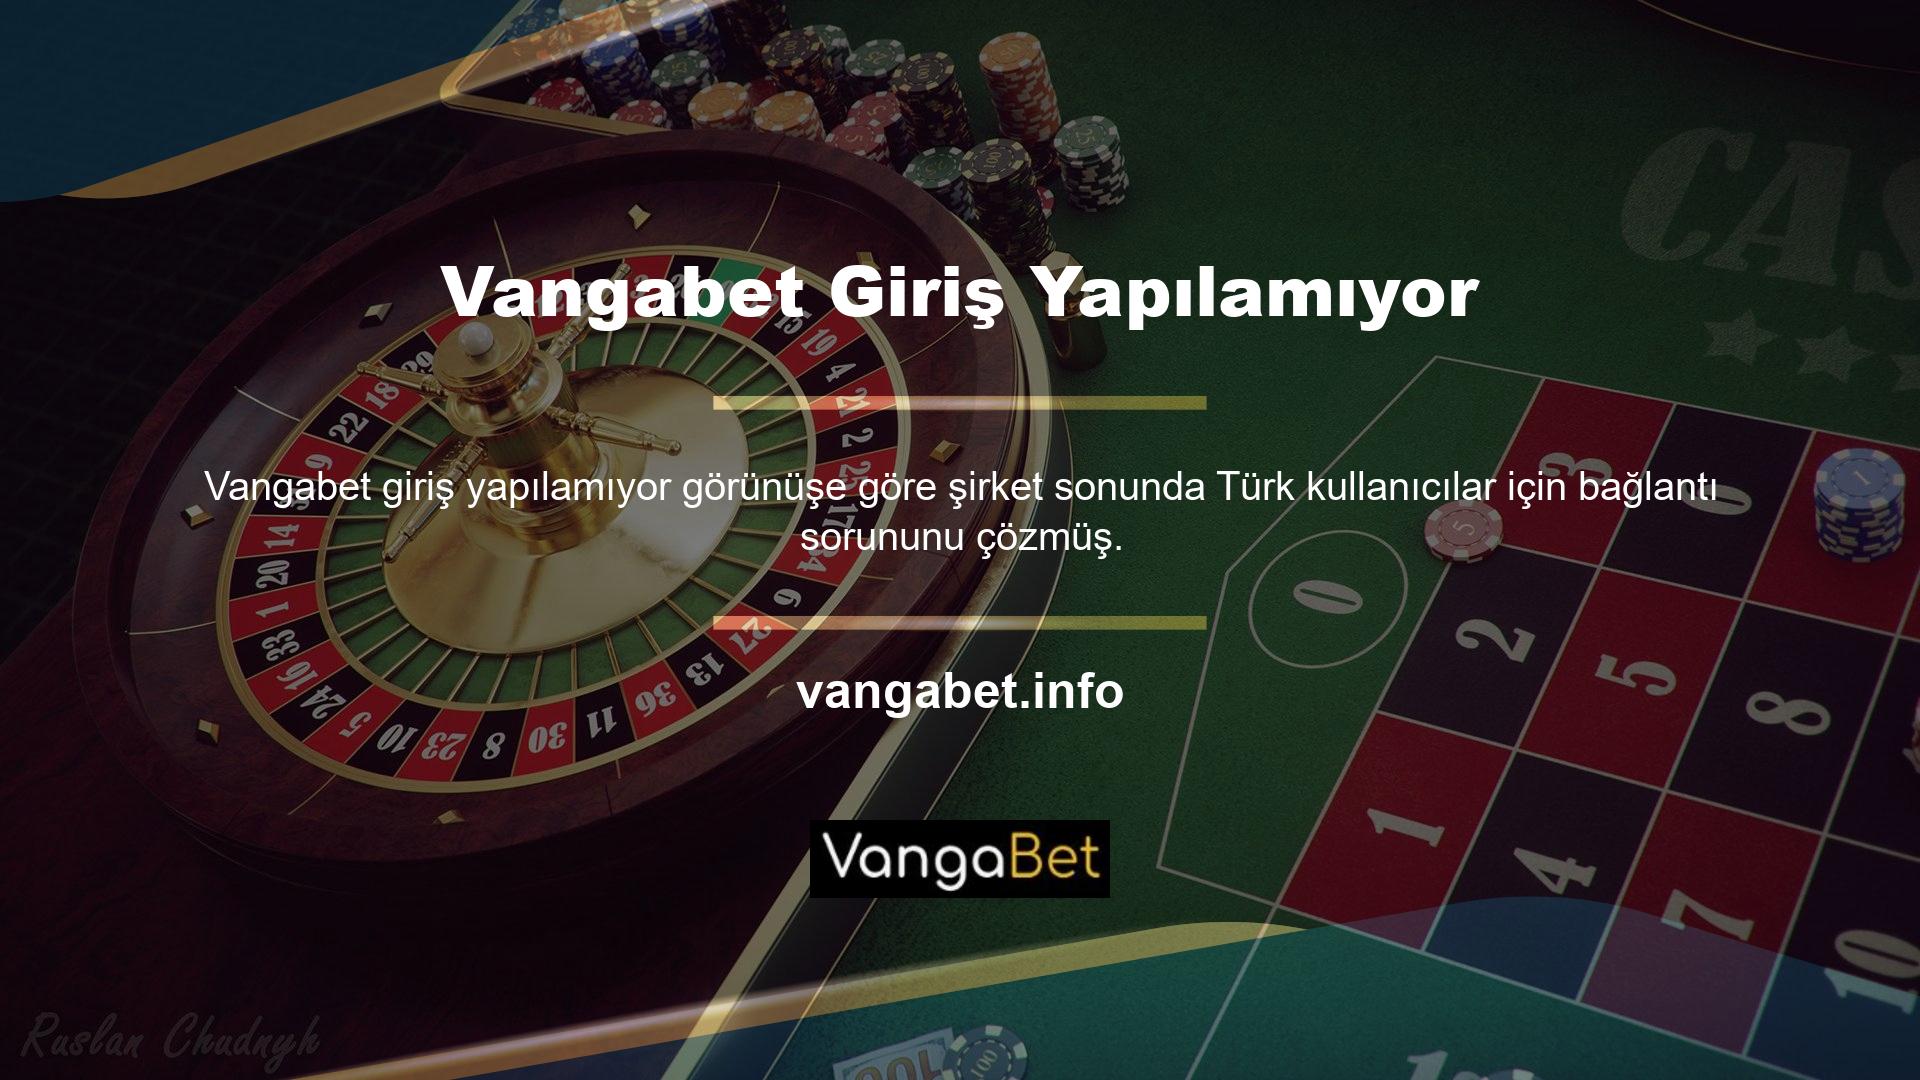 Türk kanunları Vangabet web sitesinde ticari faaliyet yapılmasına izin vermemektedir